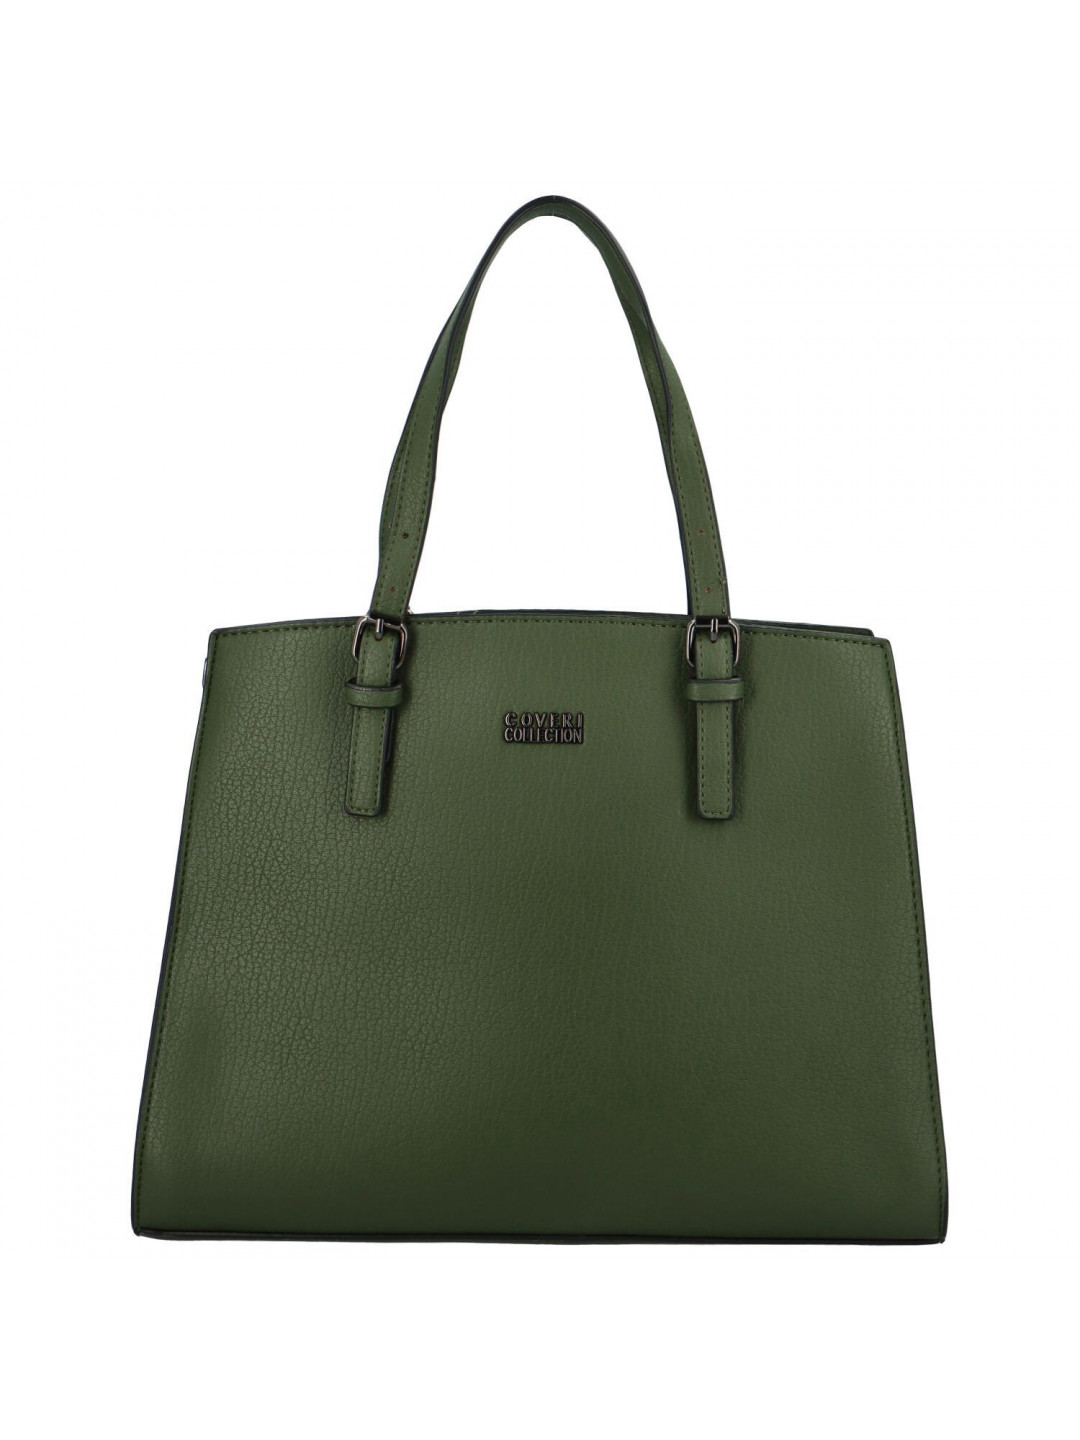 Dámská kabelka přes rameno zelená – Coveri Firenia